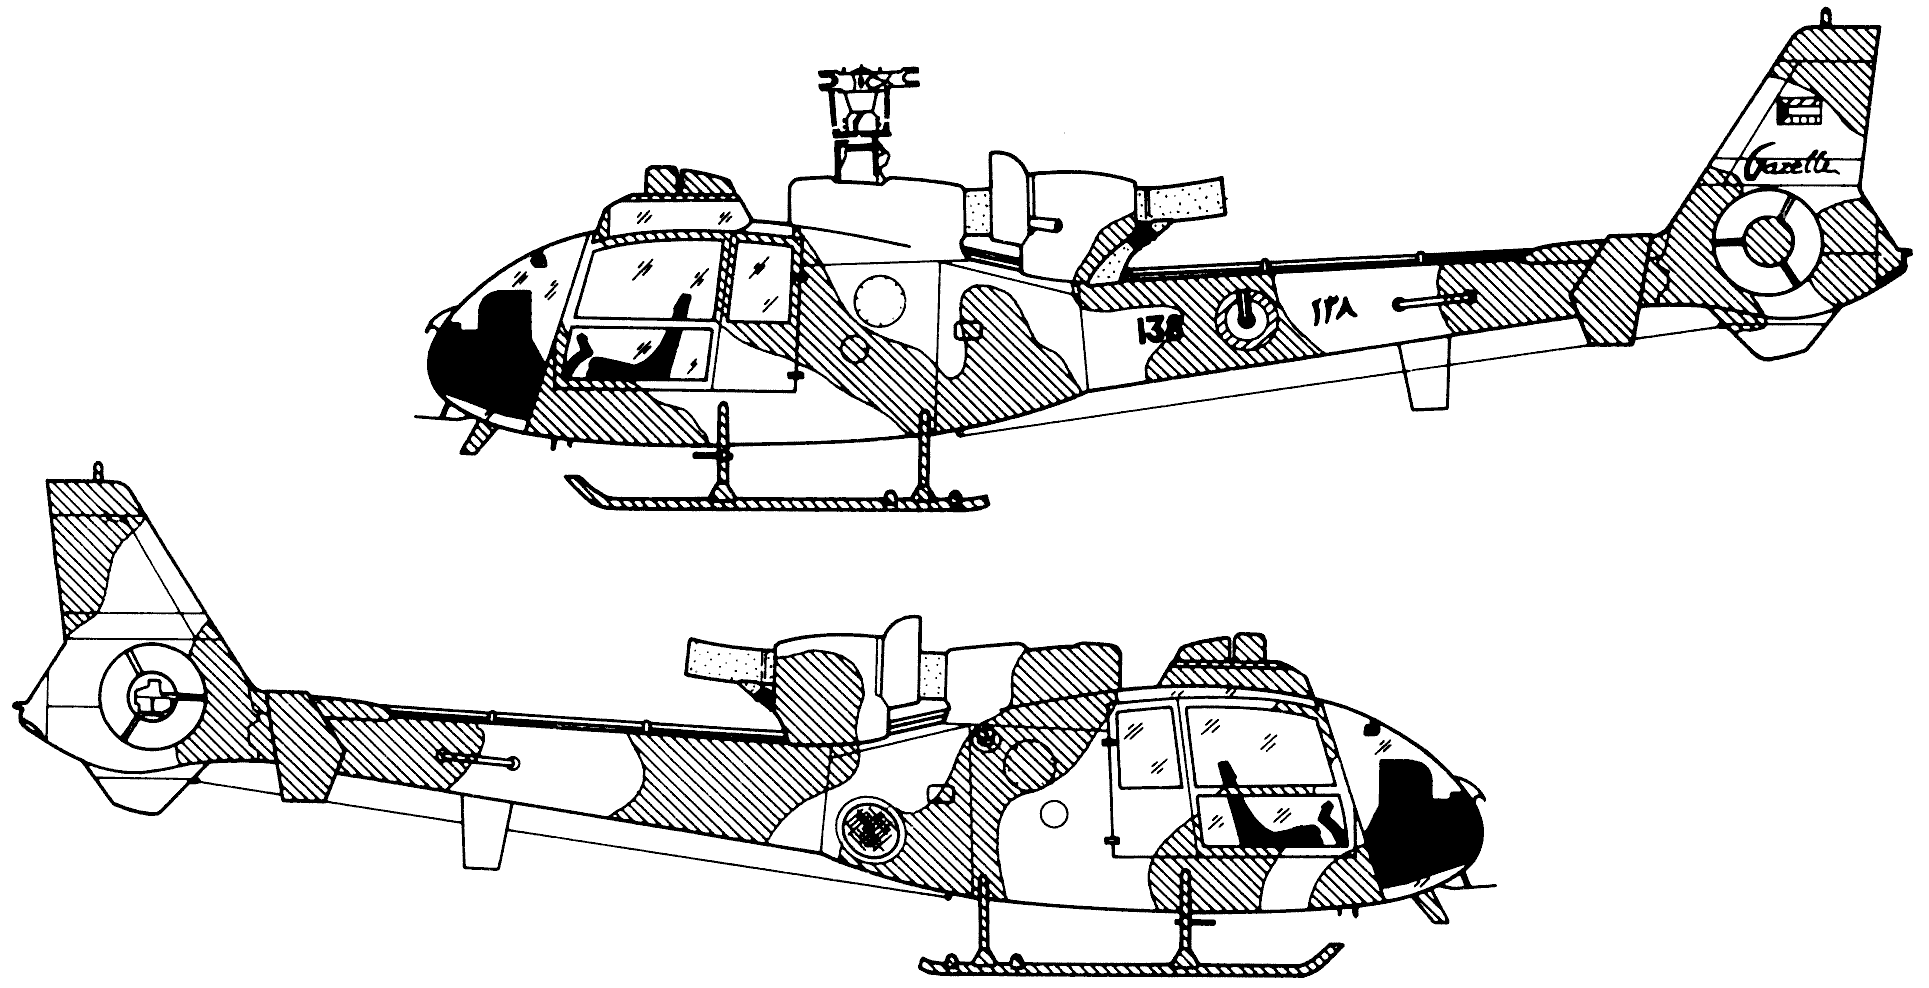 SA 341 Gazelle blueprint